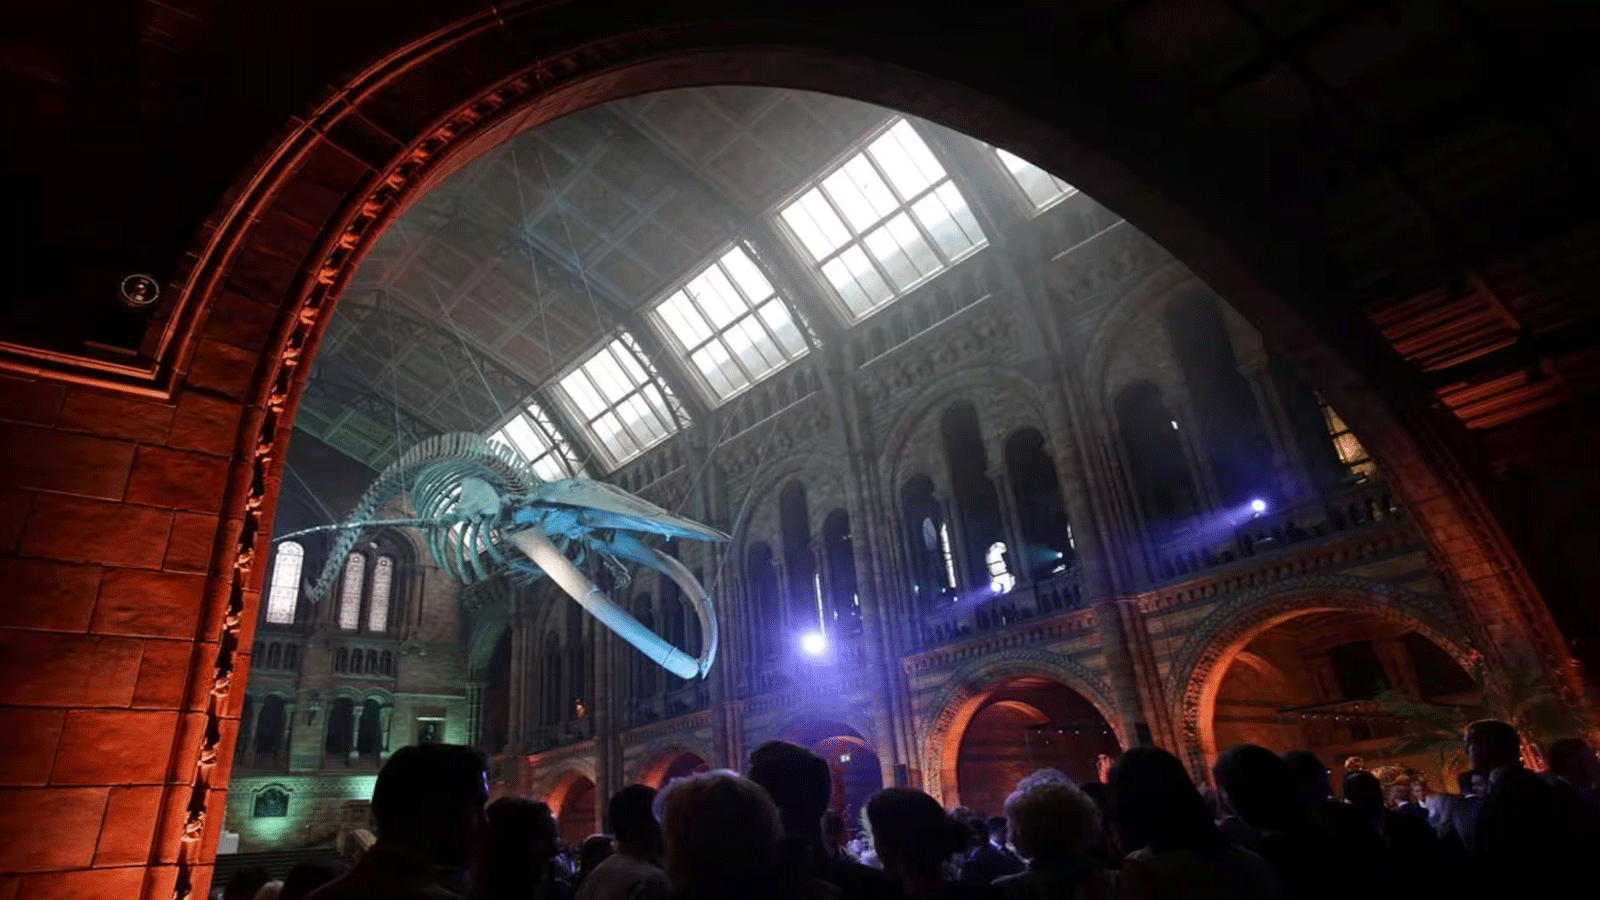  هيكلٌ عظمي لأحد أكبر الديناصورات على الإطلاق يُعرَض داخل متحف الطبيعة في لندن